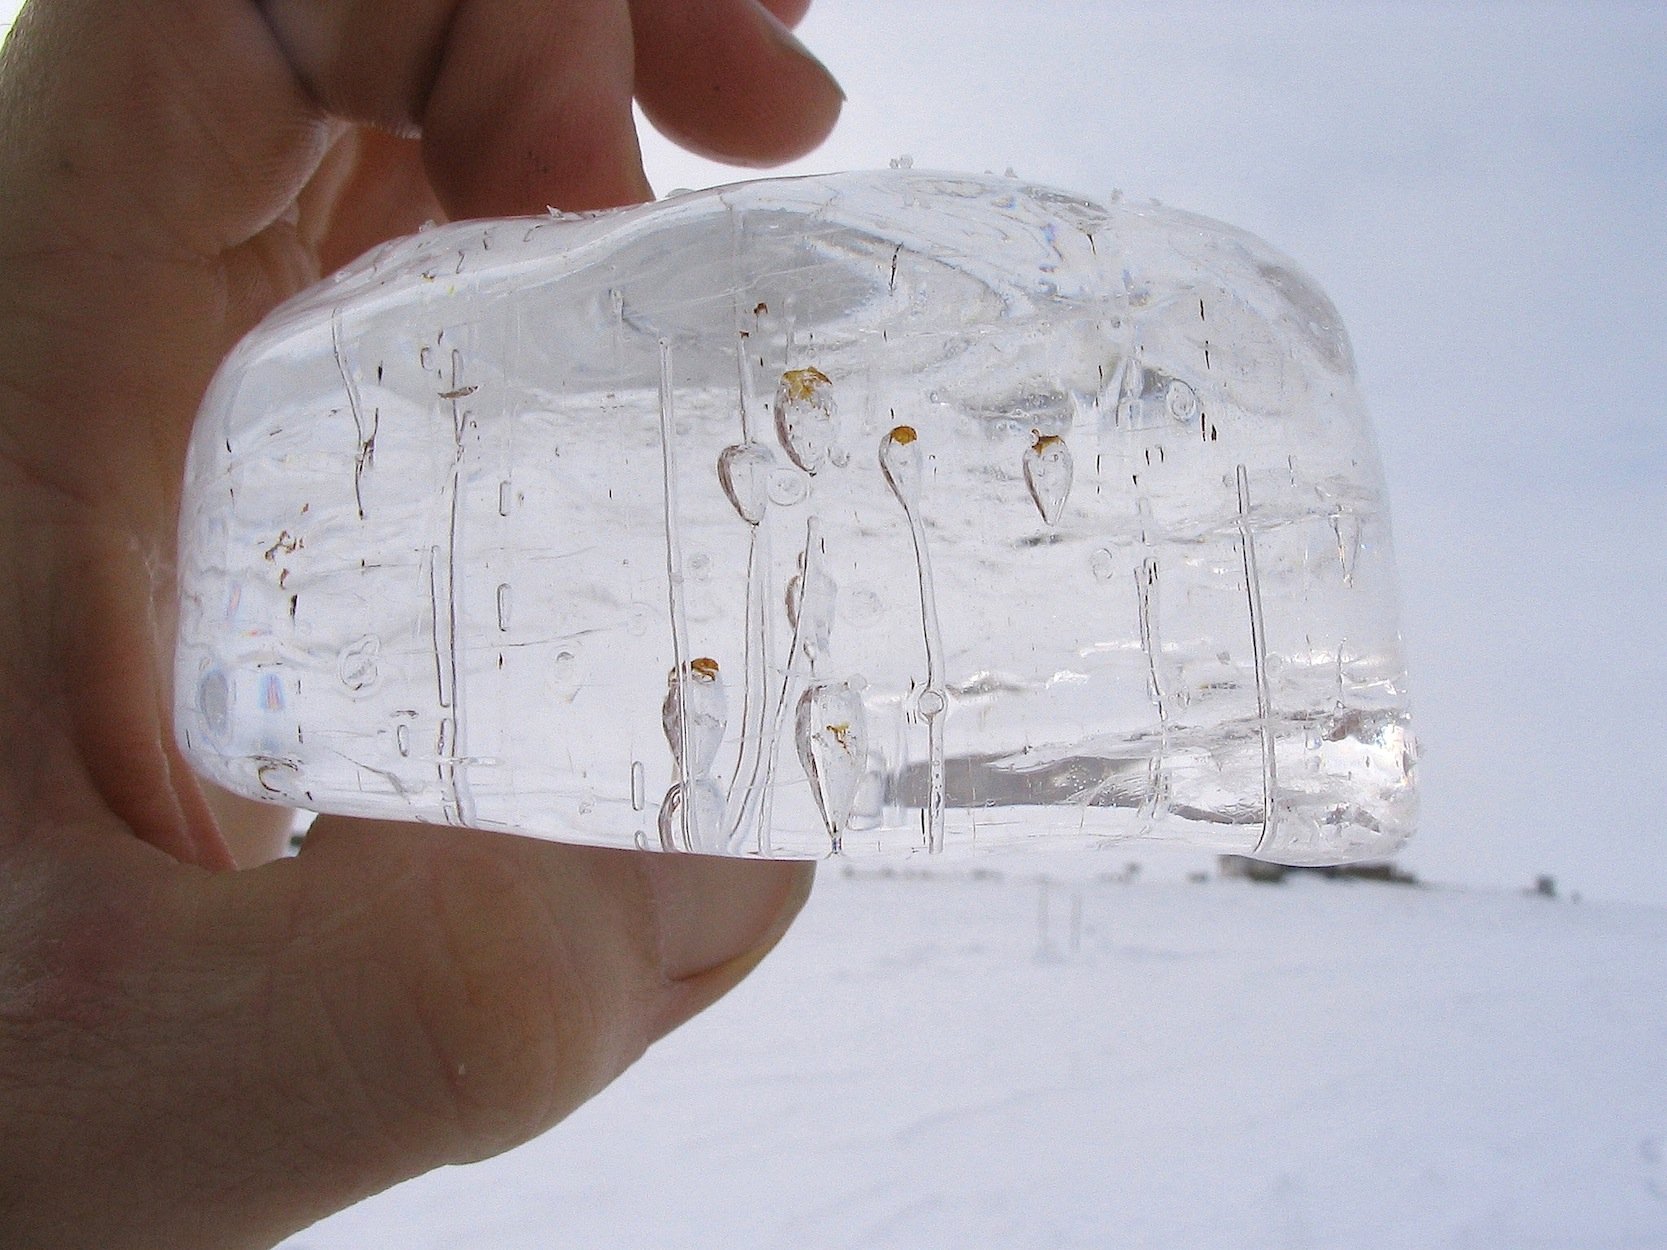 Methanblasen in einem Eisblock.